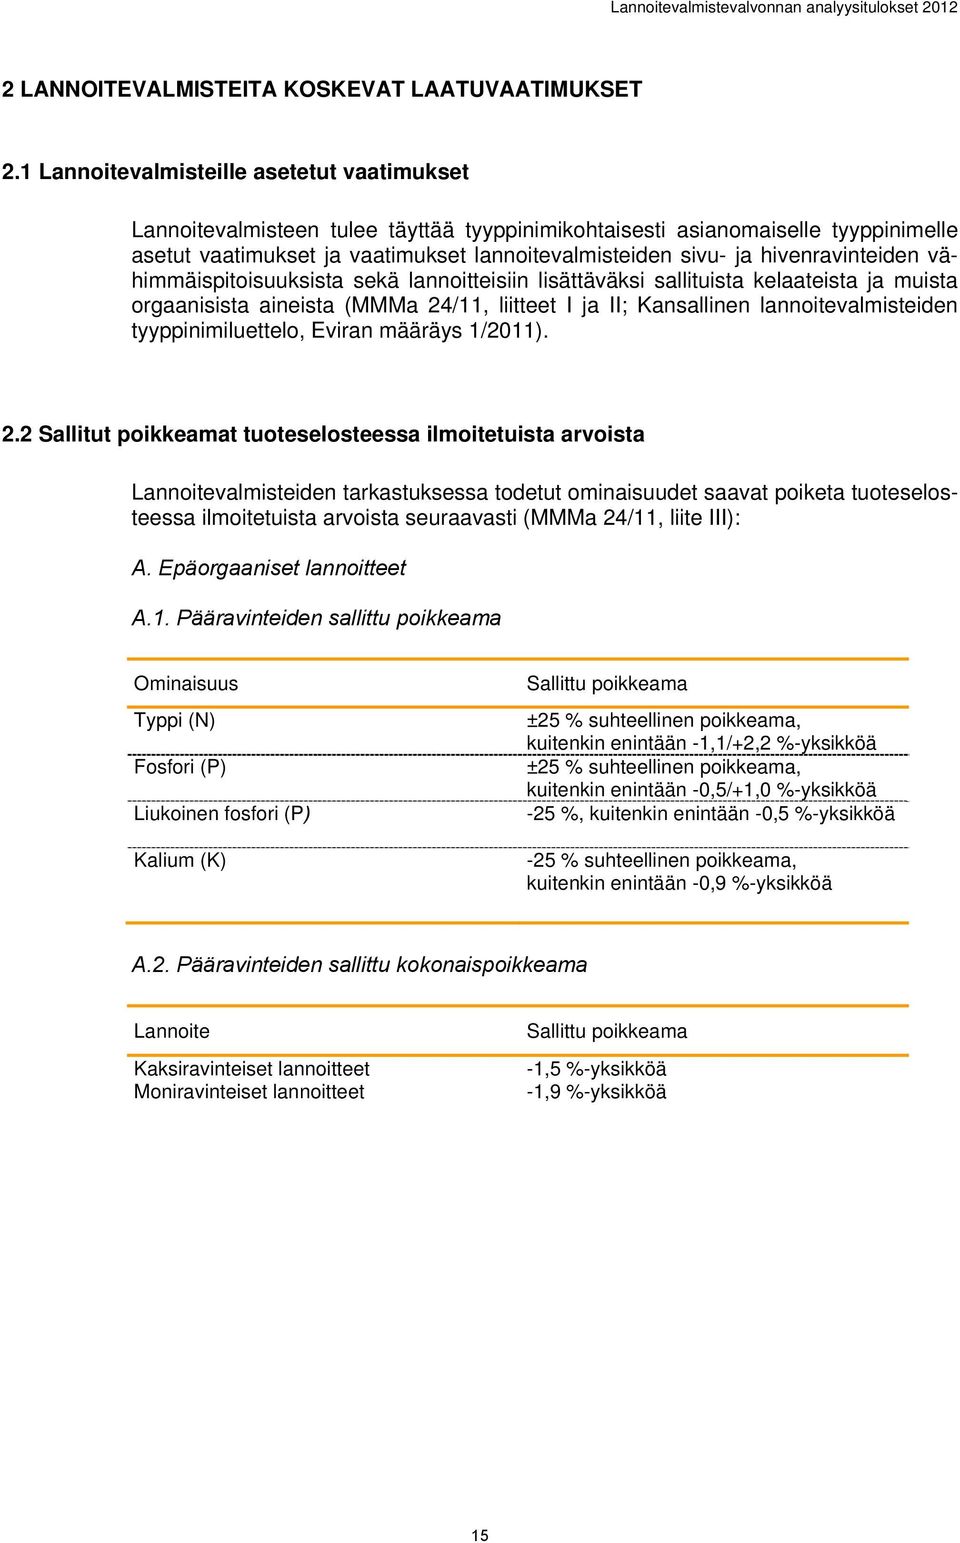 hivenravinteiden vähimmäispitoisuuksista sekä lannoitteisiin lisättäväksi sallituista kelaateista ja muista orgaanisista aineista (MMMa 24/11, liitteet I ja II; Kansallinen lannoitevalmisteiden